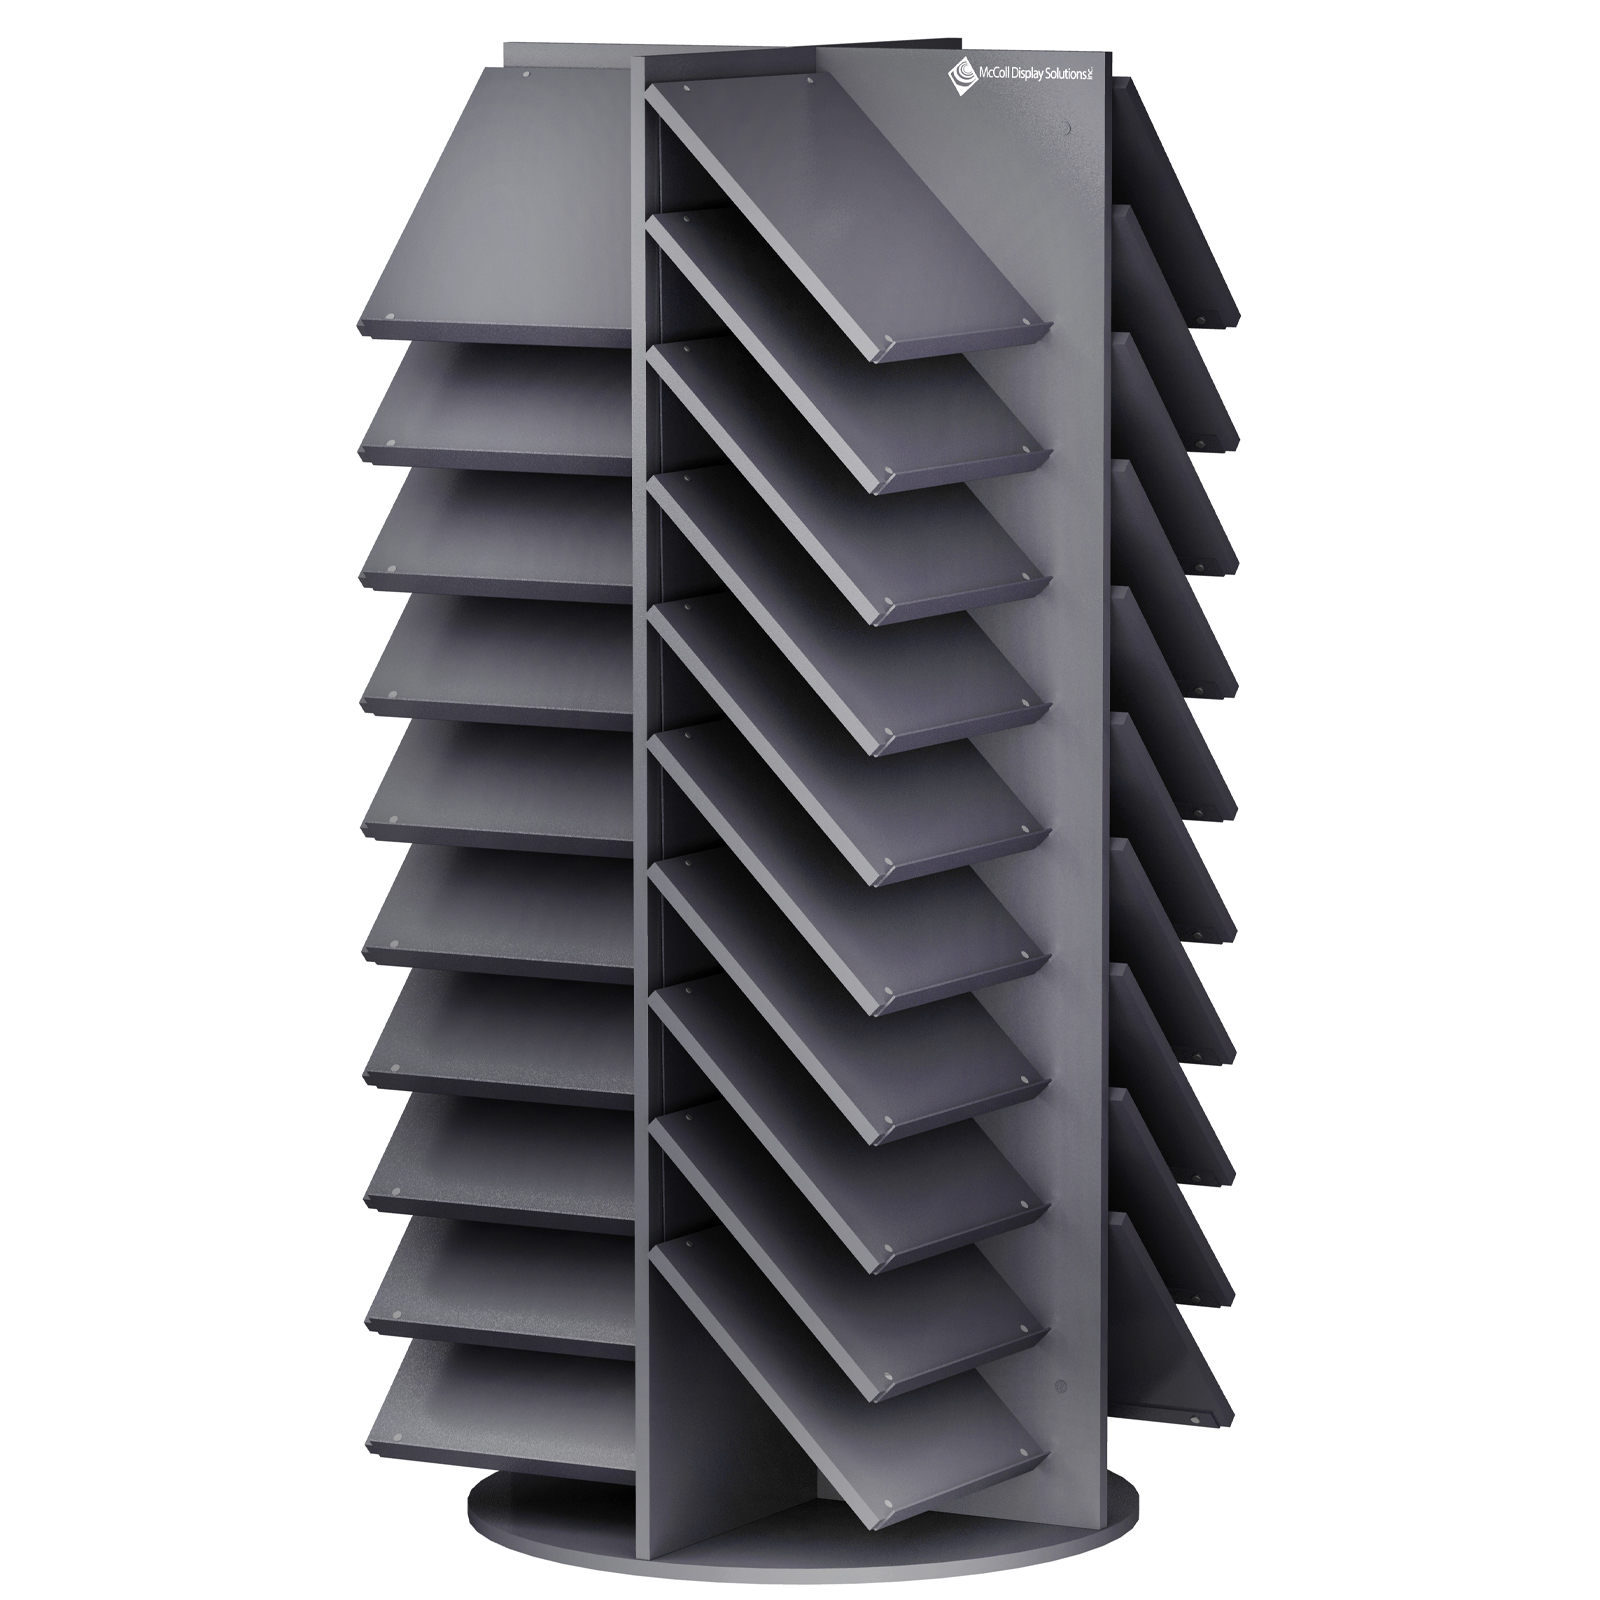 CD22 Rotating Tower Shelf Sample Display Custom Shelves for Your Size Tile Samples